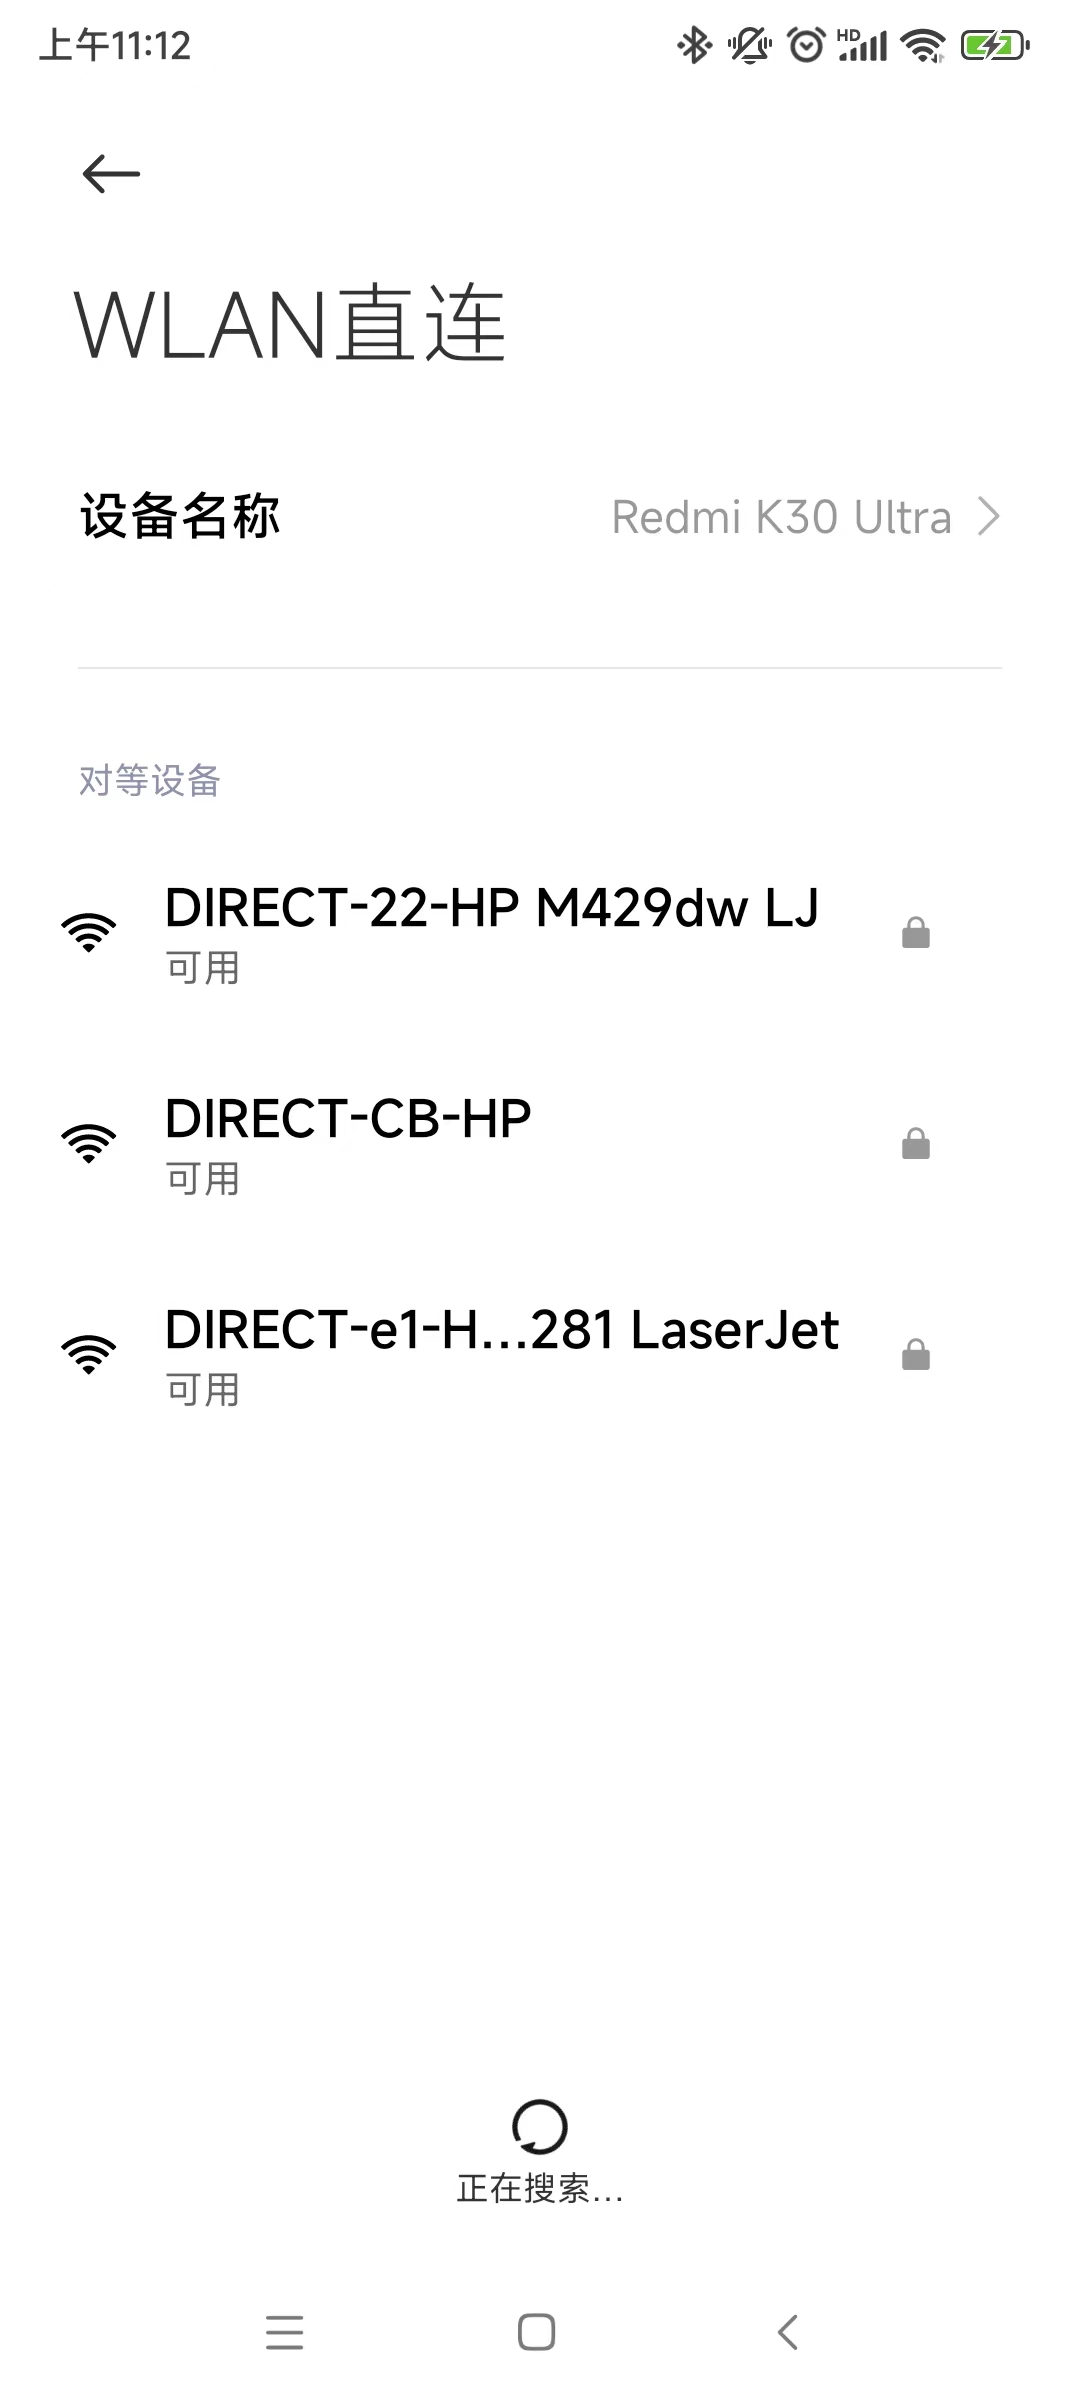 Android 系统中查询附近的 Wi-Fi Direct 服务